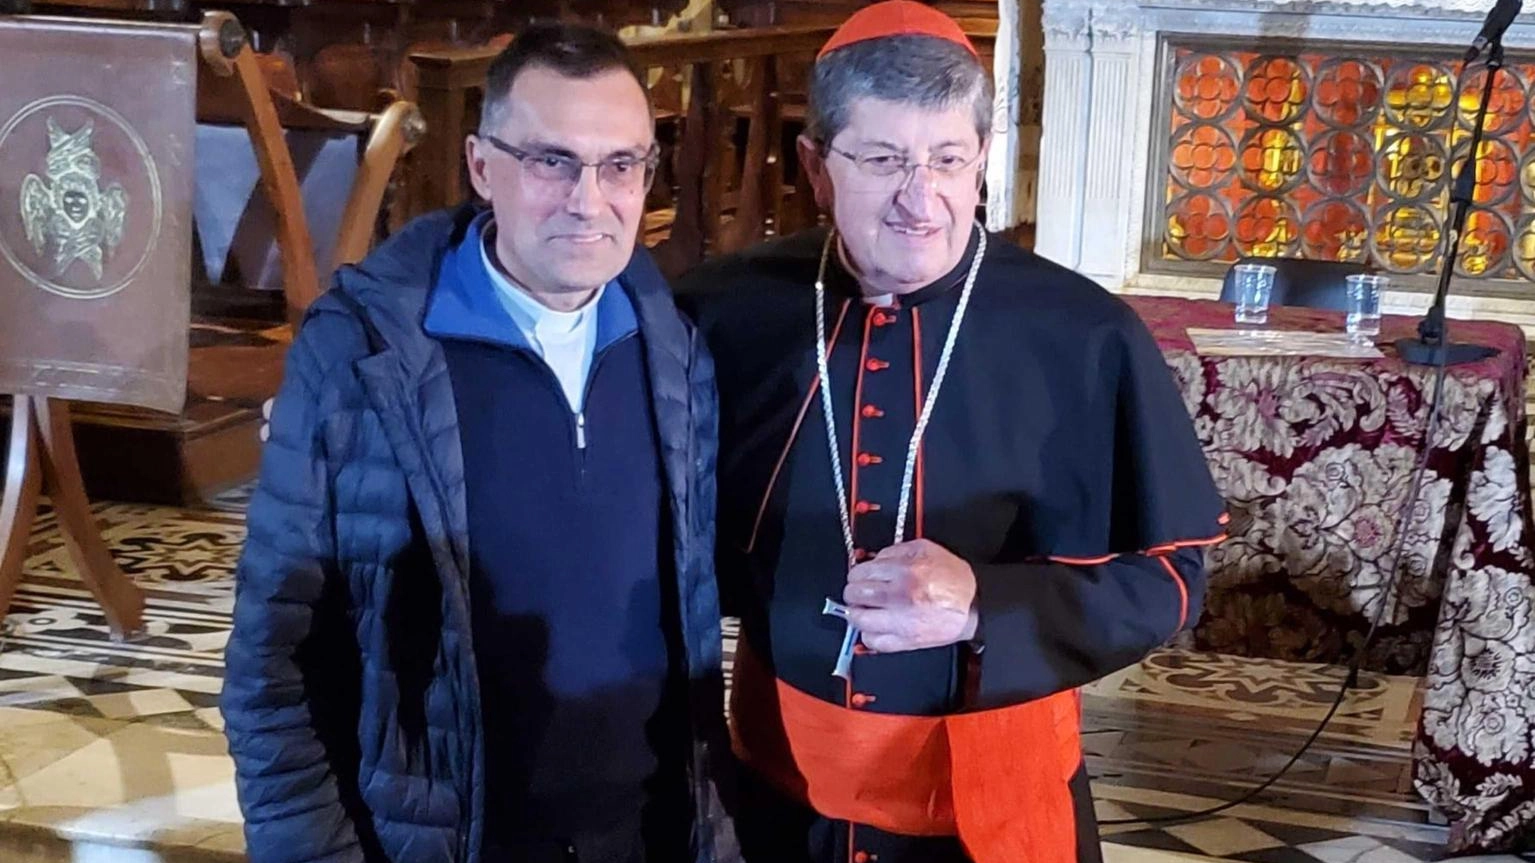 Parroco Gambelli nuovo arcivescovo di Firenze